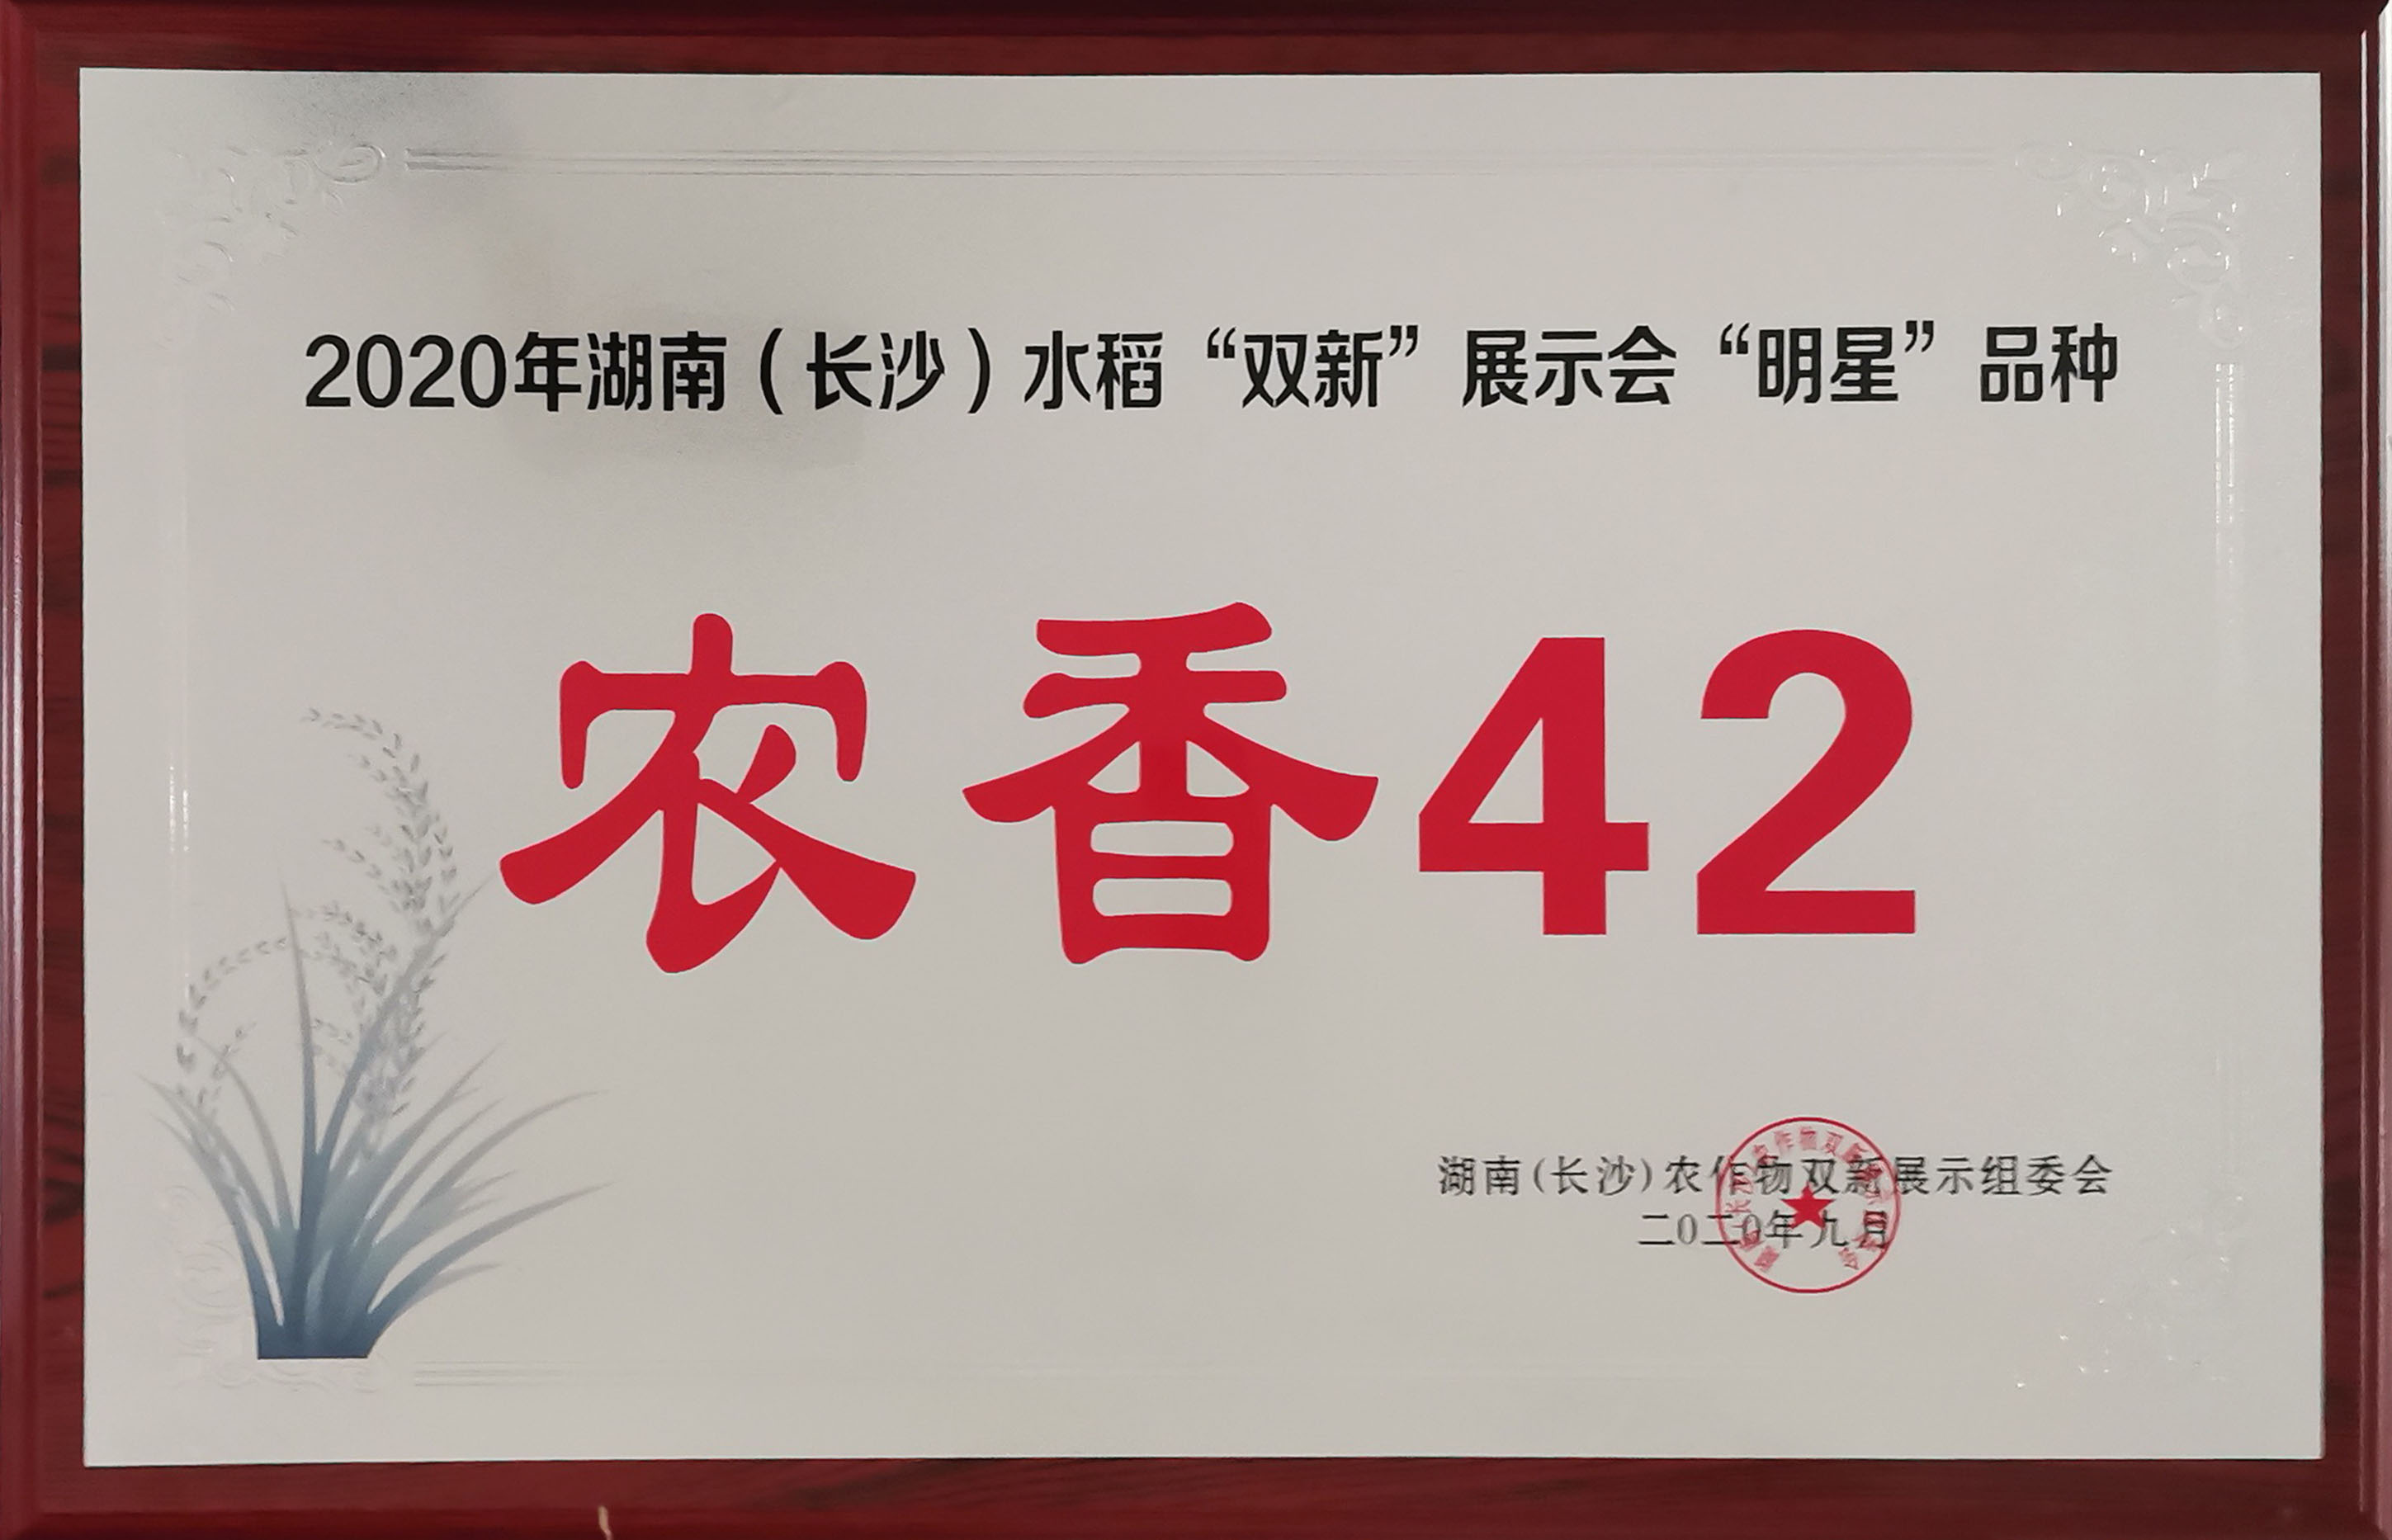 2020年湖南（长沙）水稻“双新”展示会“明星”品种（农香42）